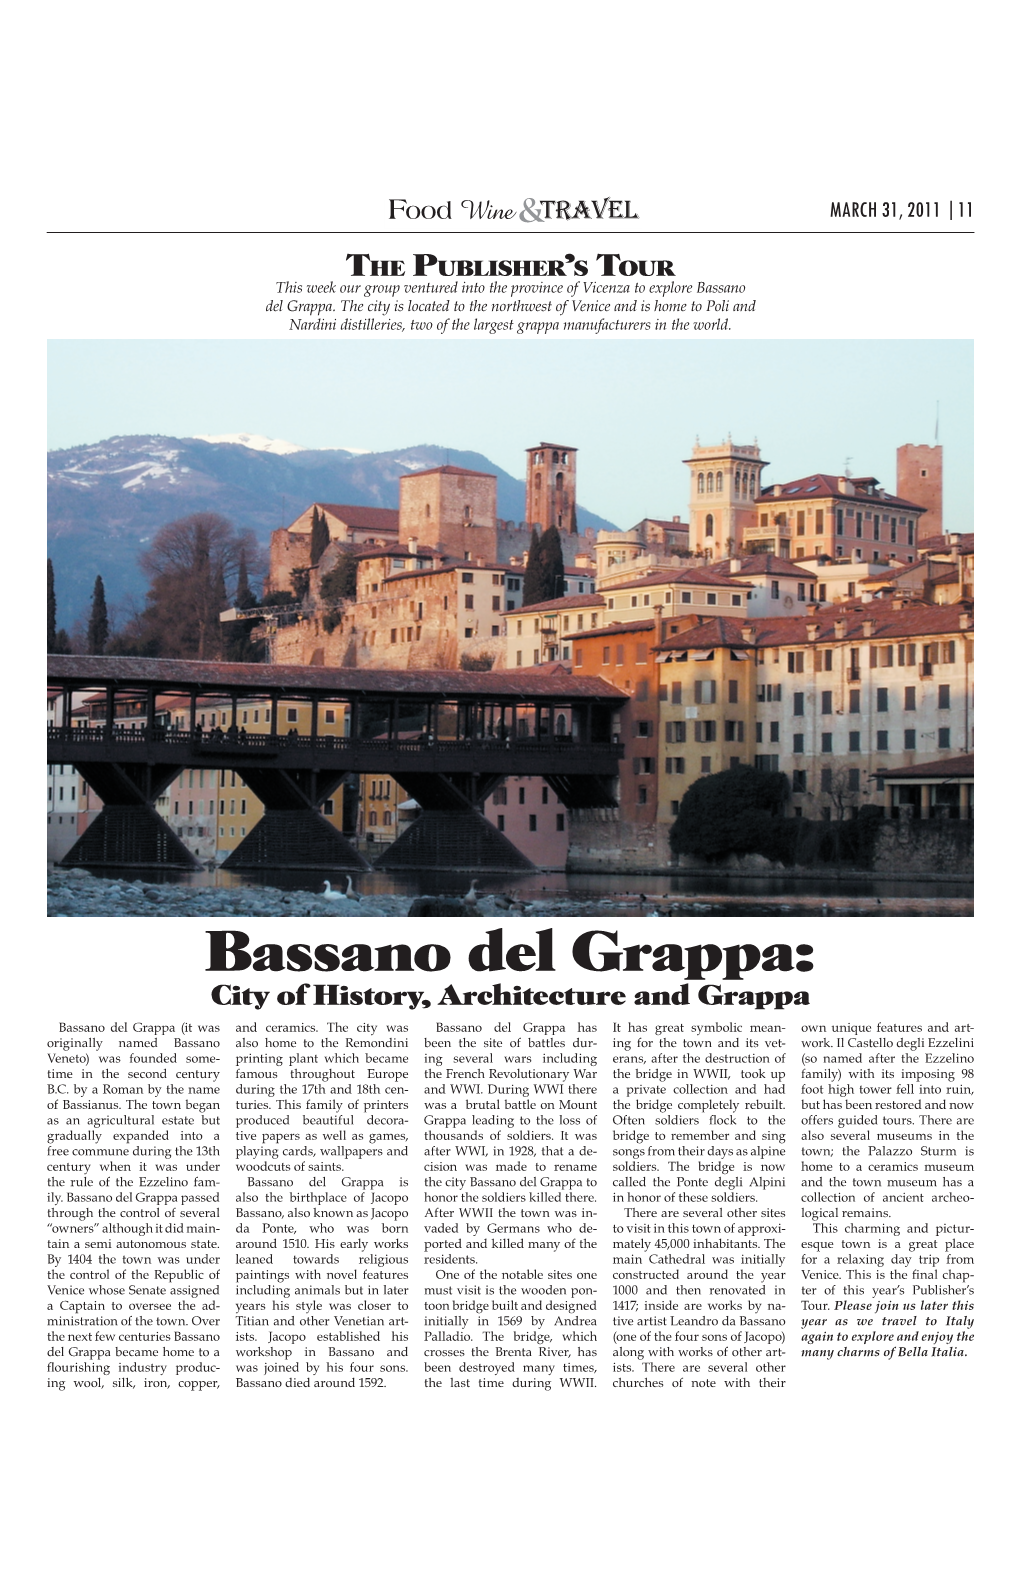 Bassano Del Grappa: City of History, Architecture and Grappa Bassano Del Grappa (It Was and Ceramics